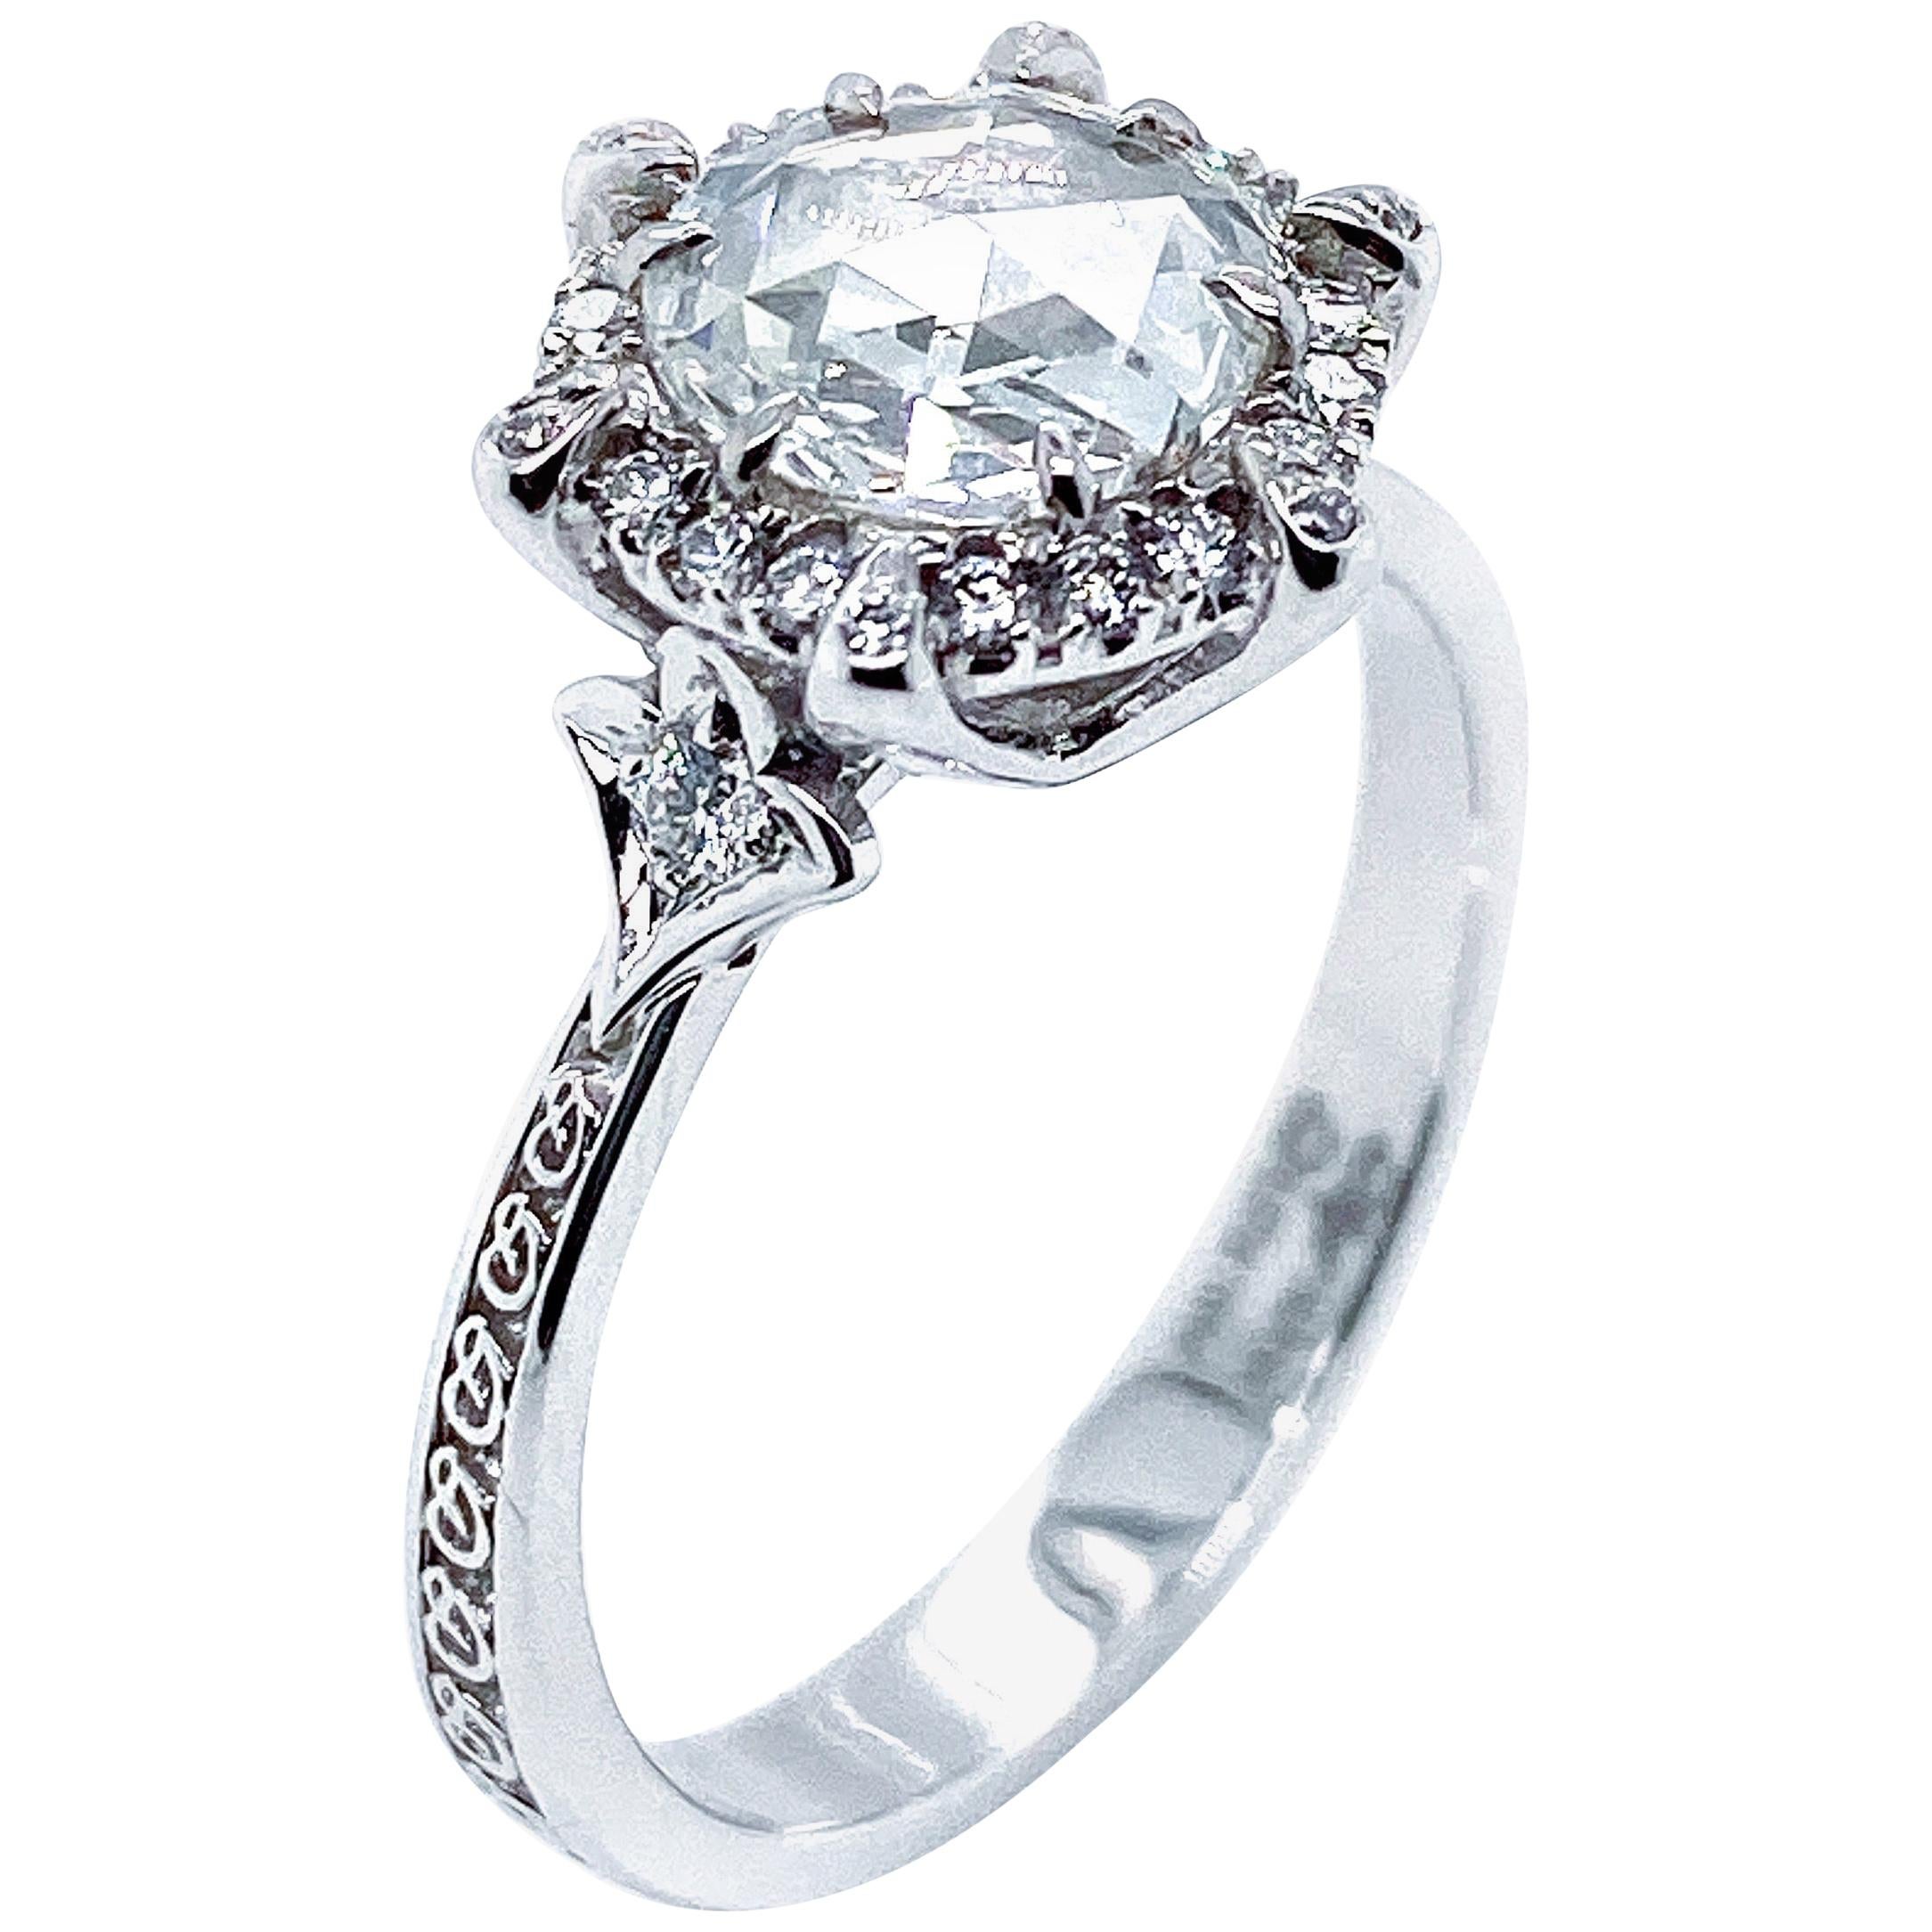 Dilys' Old Cut GIA Certified Diamond Ring in 18 Karat White Gold